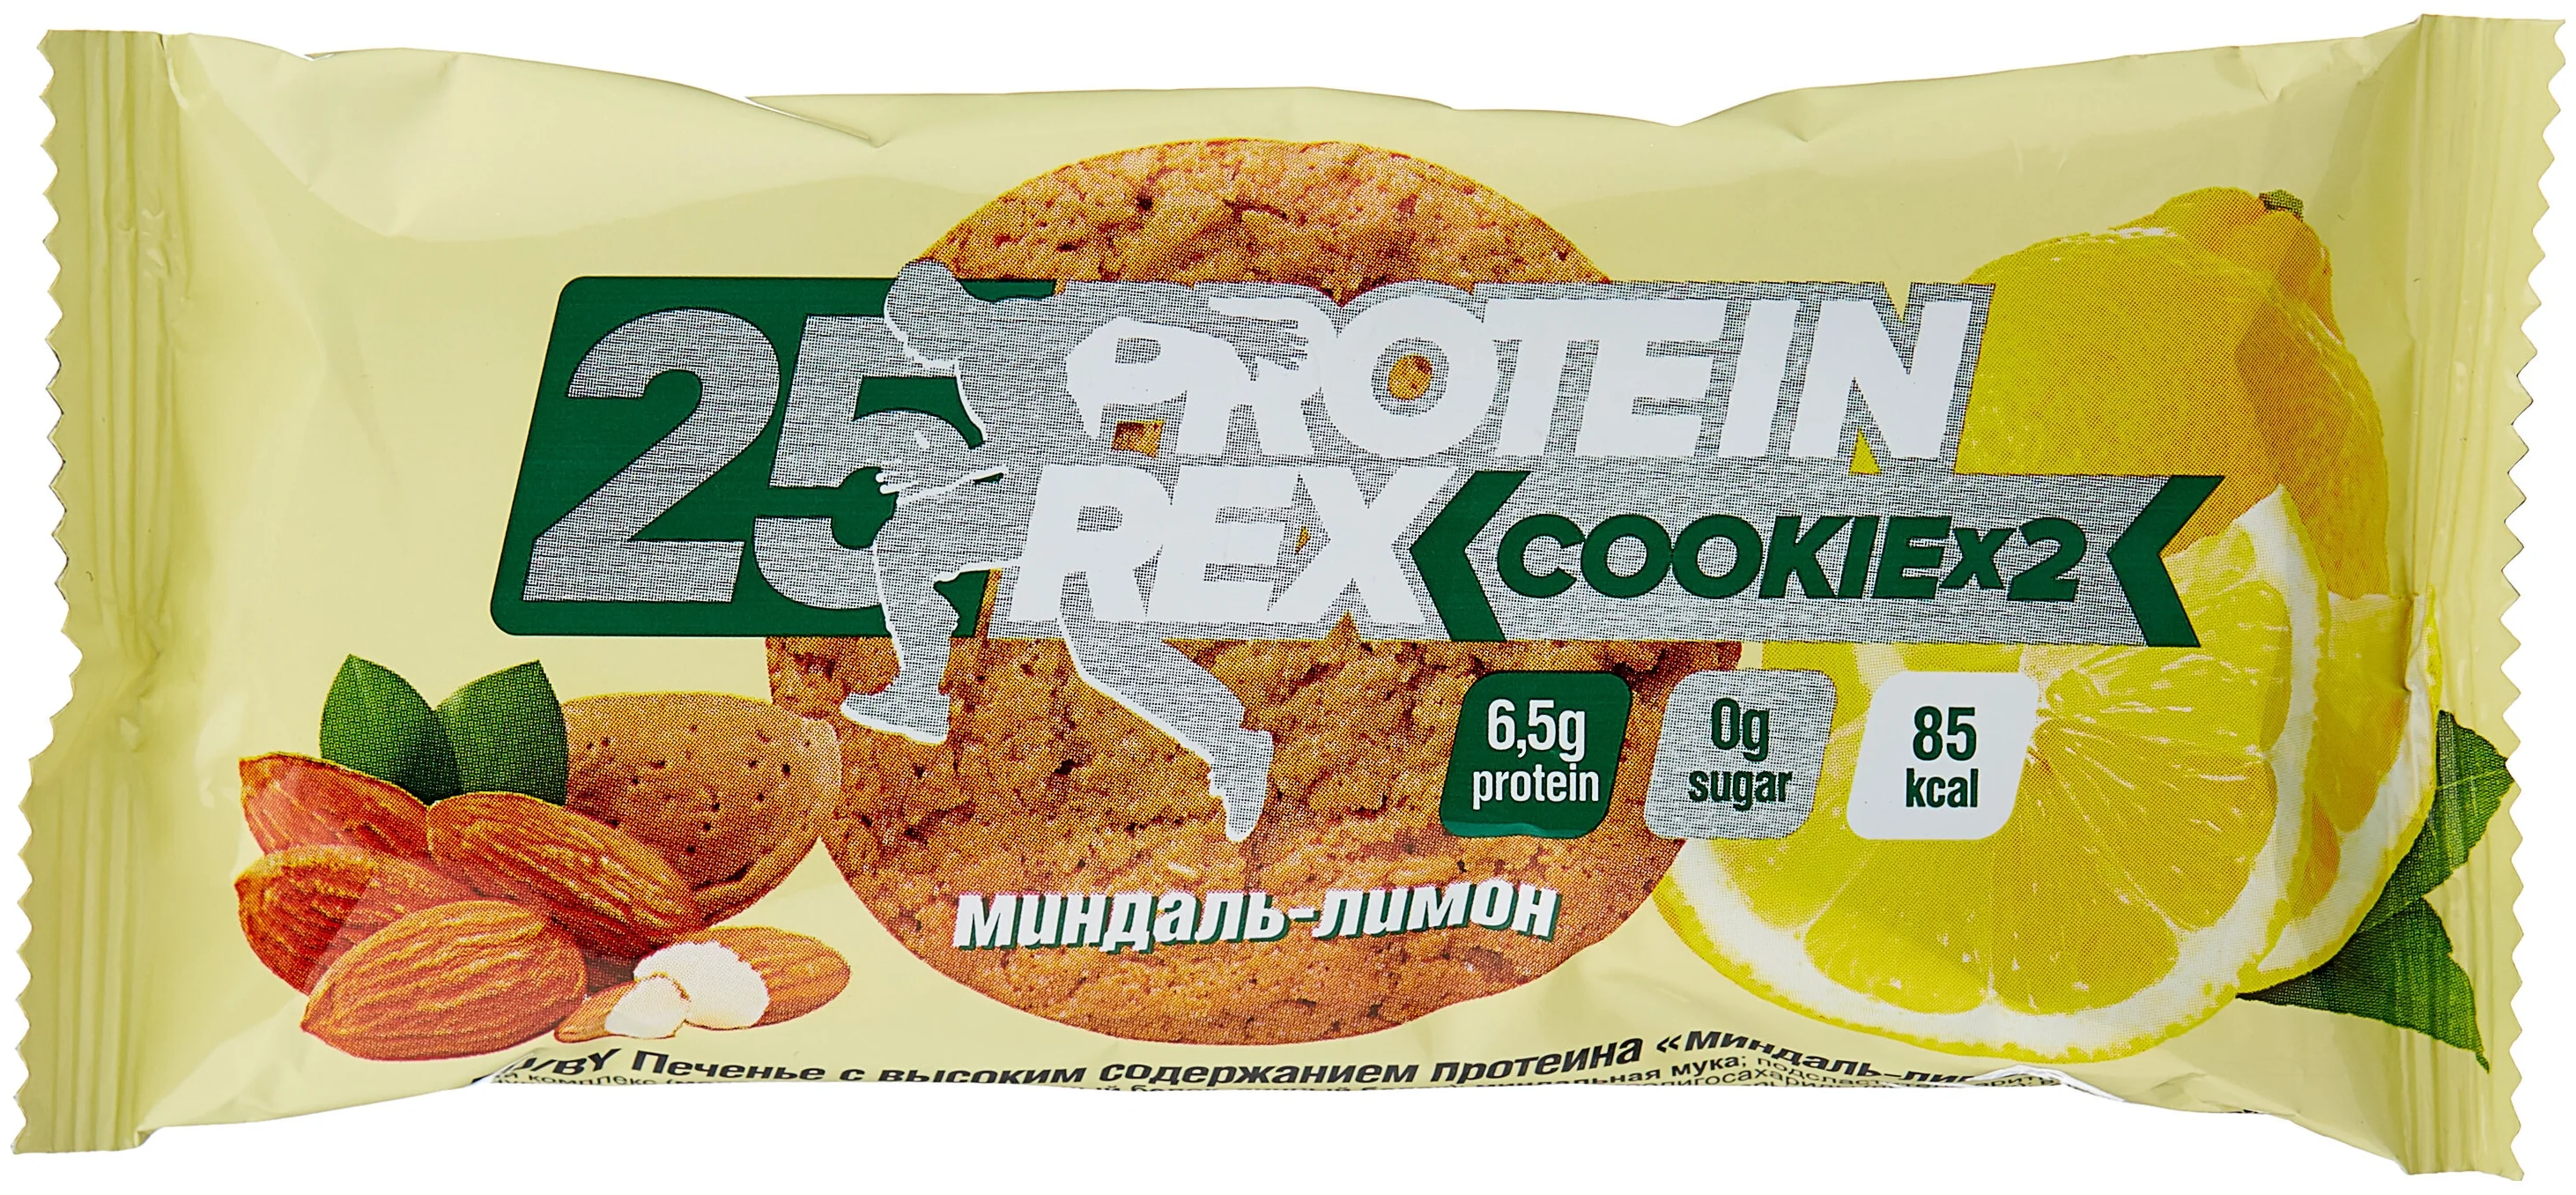 ProteinRex Cookie х 2 без сахара 25%, 50 г, 12 шт. - порций в продукте 2 шт.